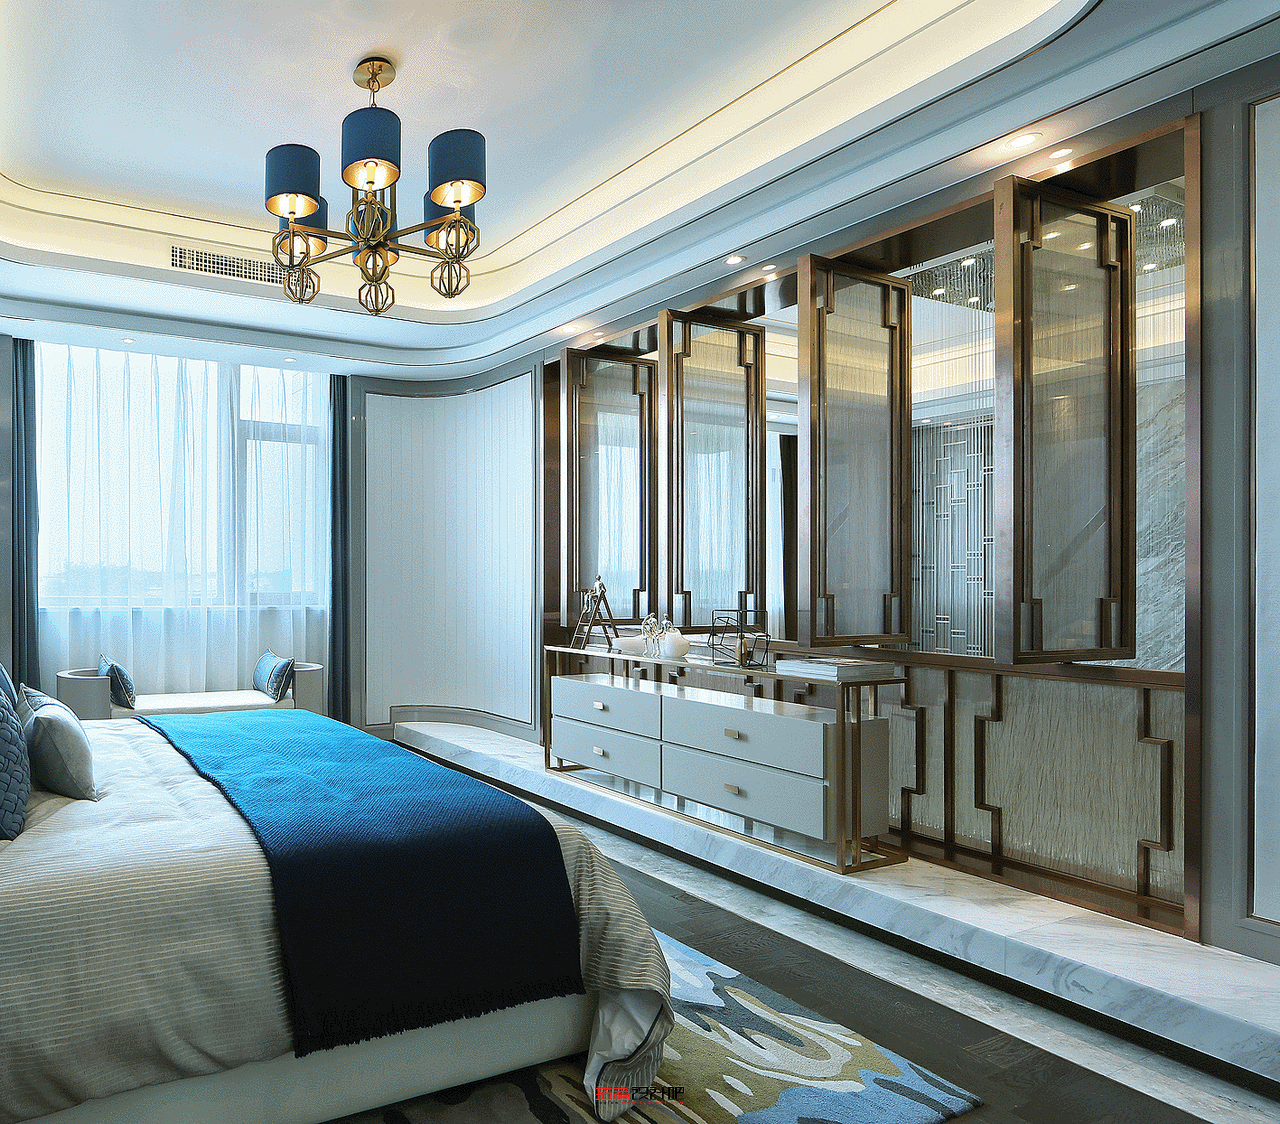 次卧墙面设计传承了东方生活美学经典，令居住者可静享私人时光。